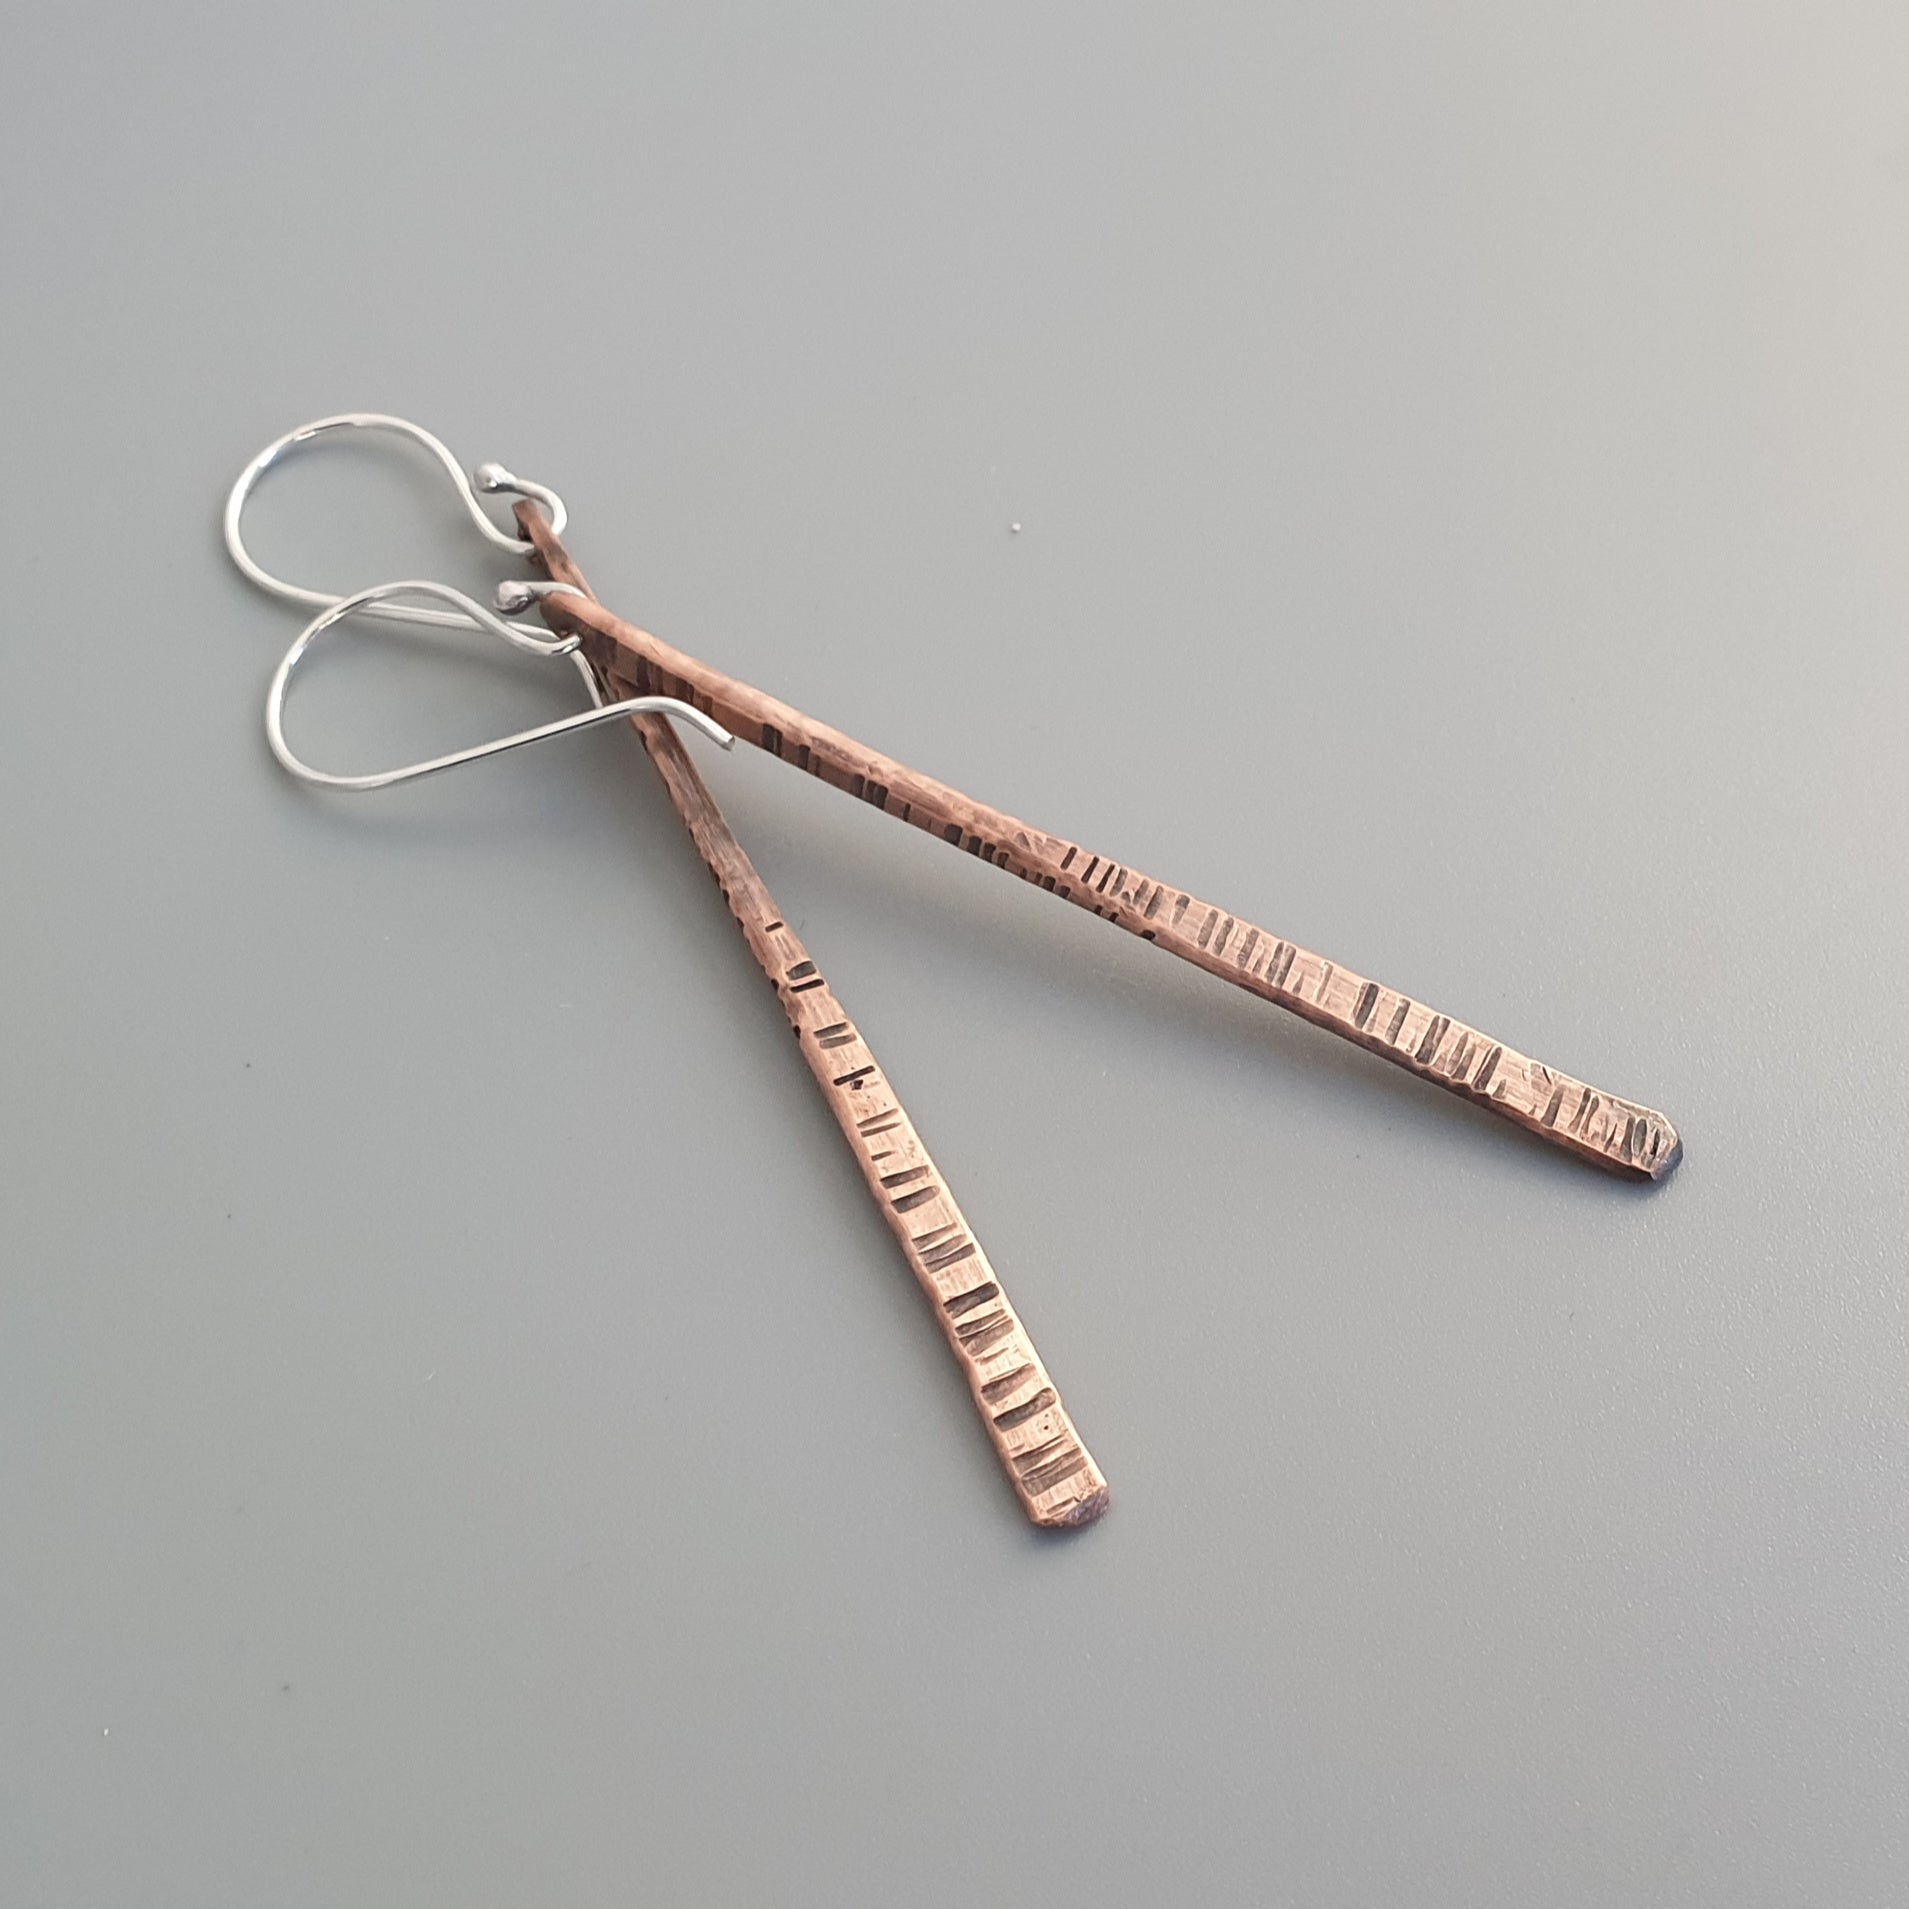 Tapered Copper Earrings - MaisyPlum